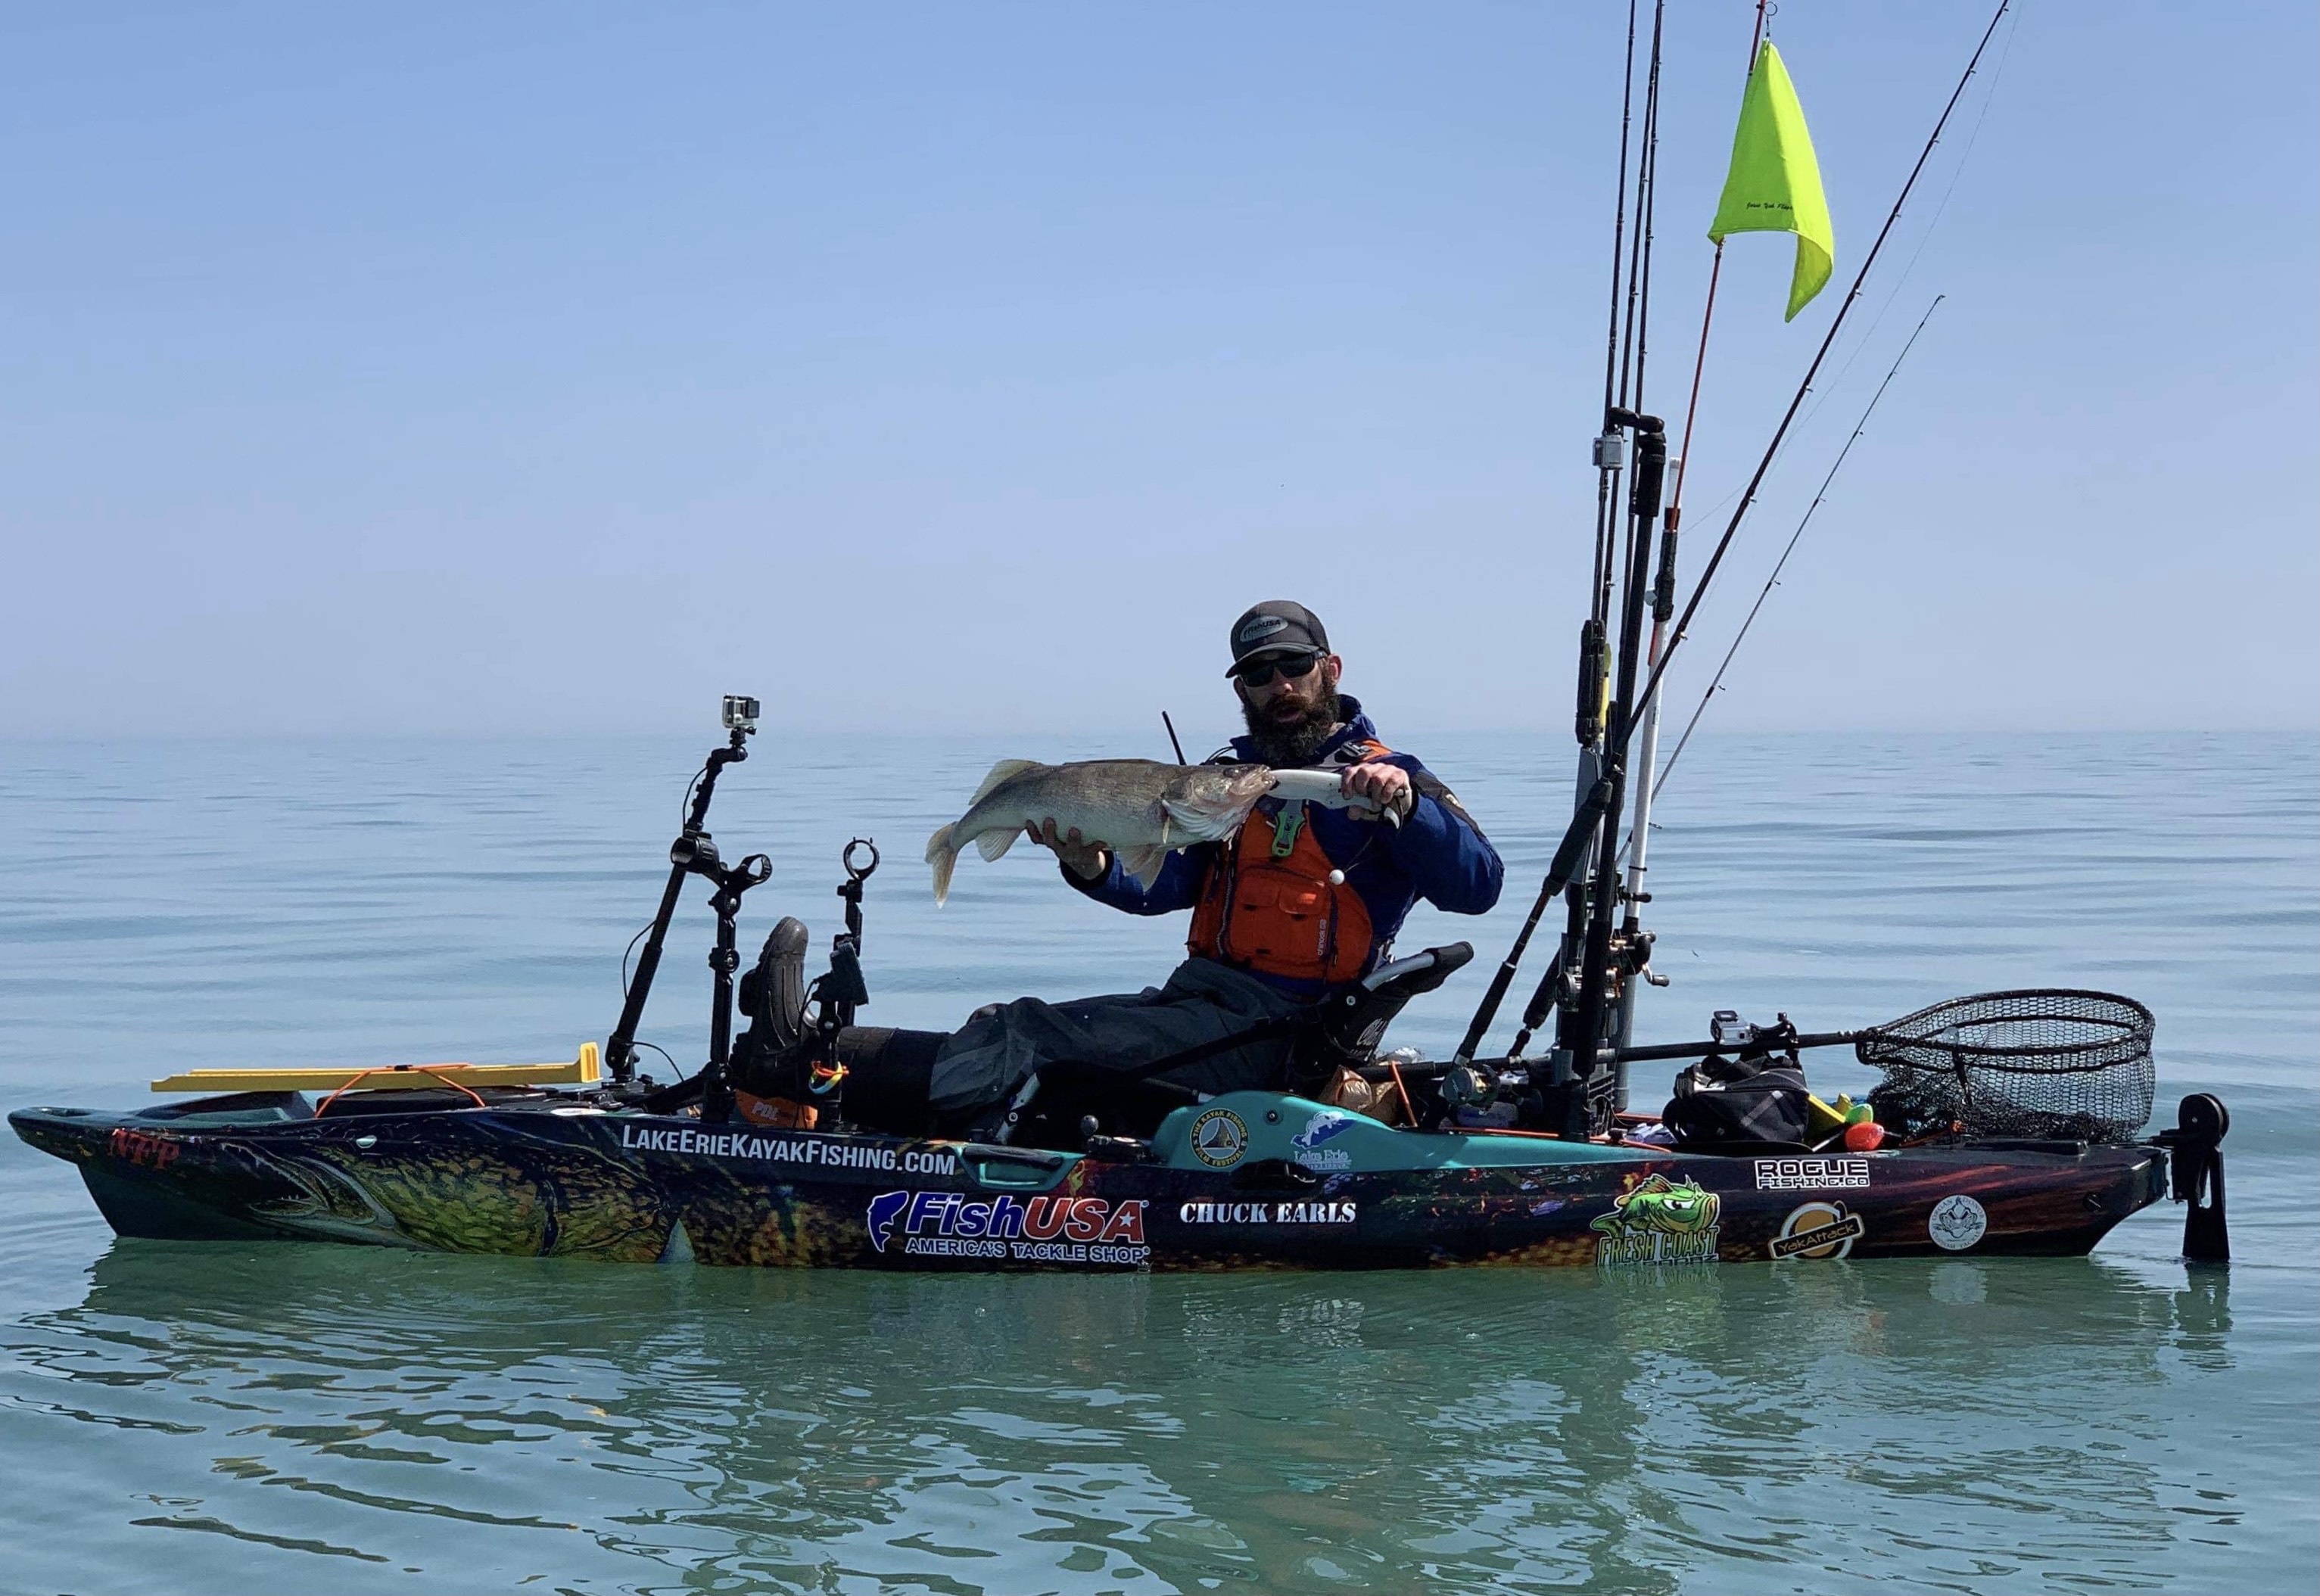 Kayak fishing the Great Lakes